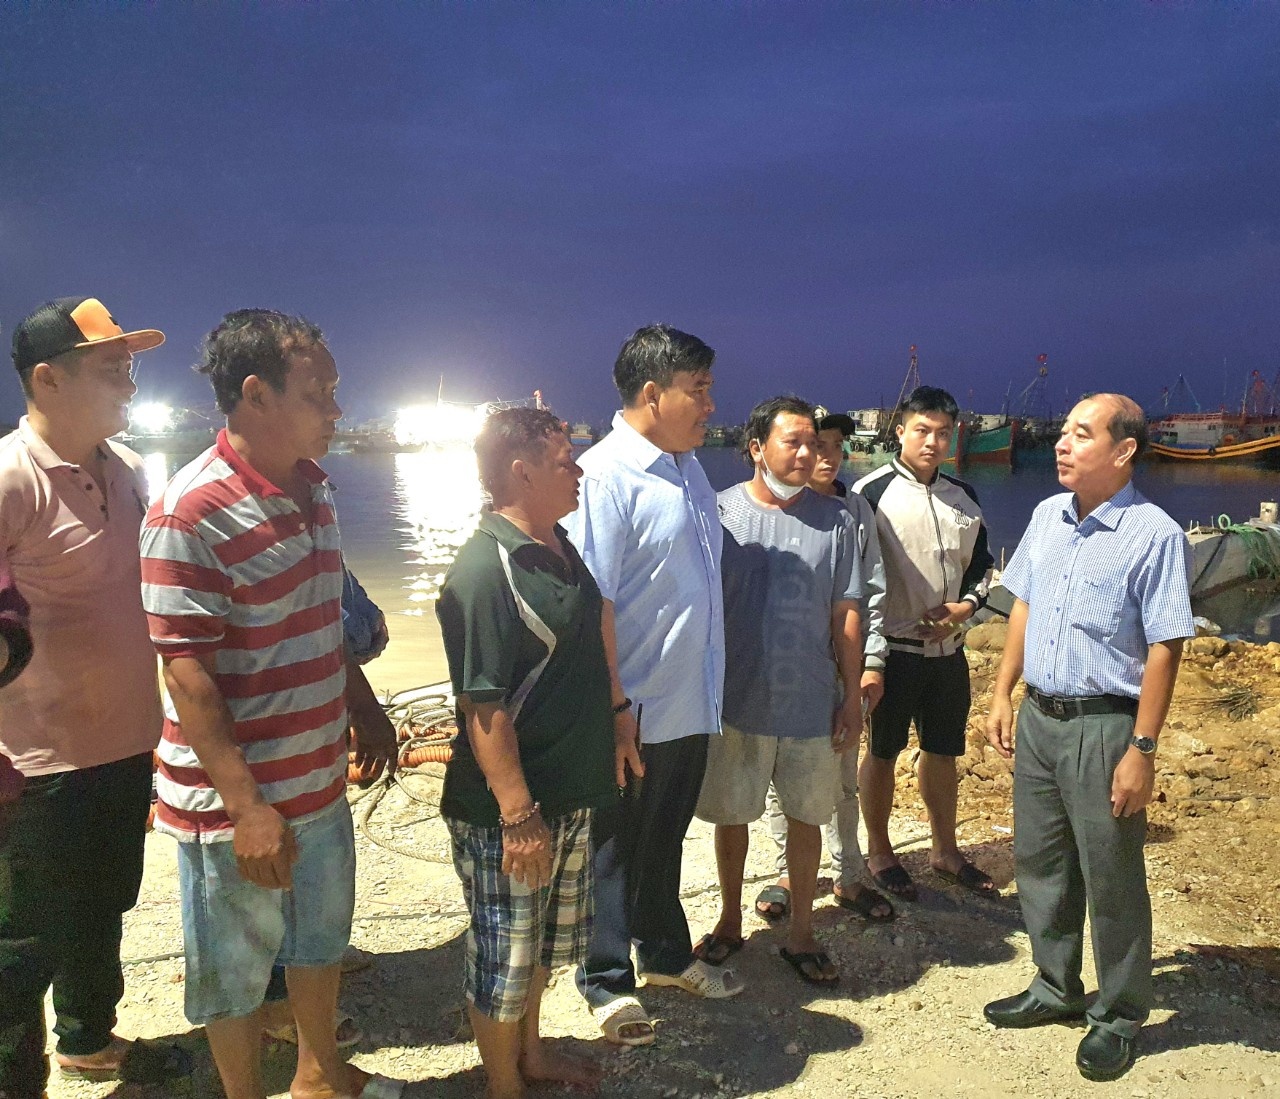 Bà Rịa - Vũng Tàu: Chủ tịch huyện chúc ngư dân ra khơi đầu năm ‘trúng cá, trúng giá’ - ảnh 1